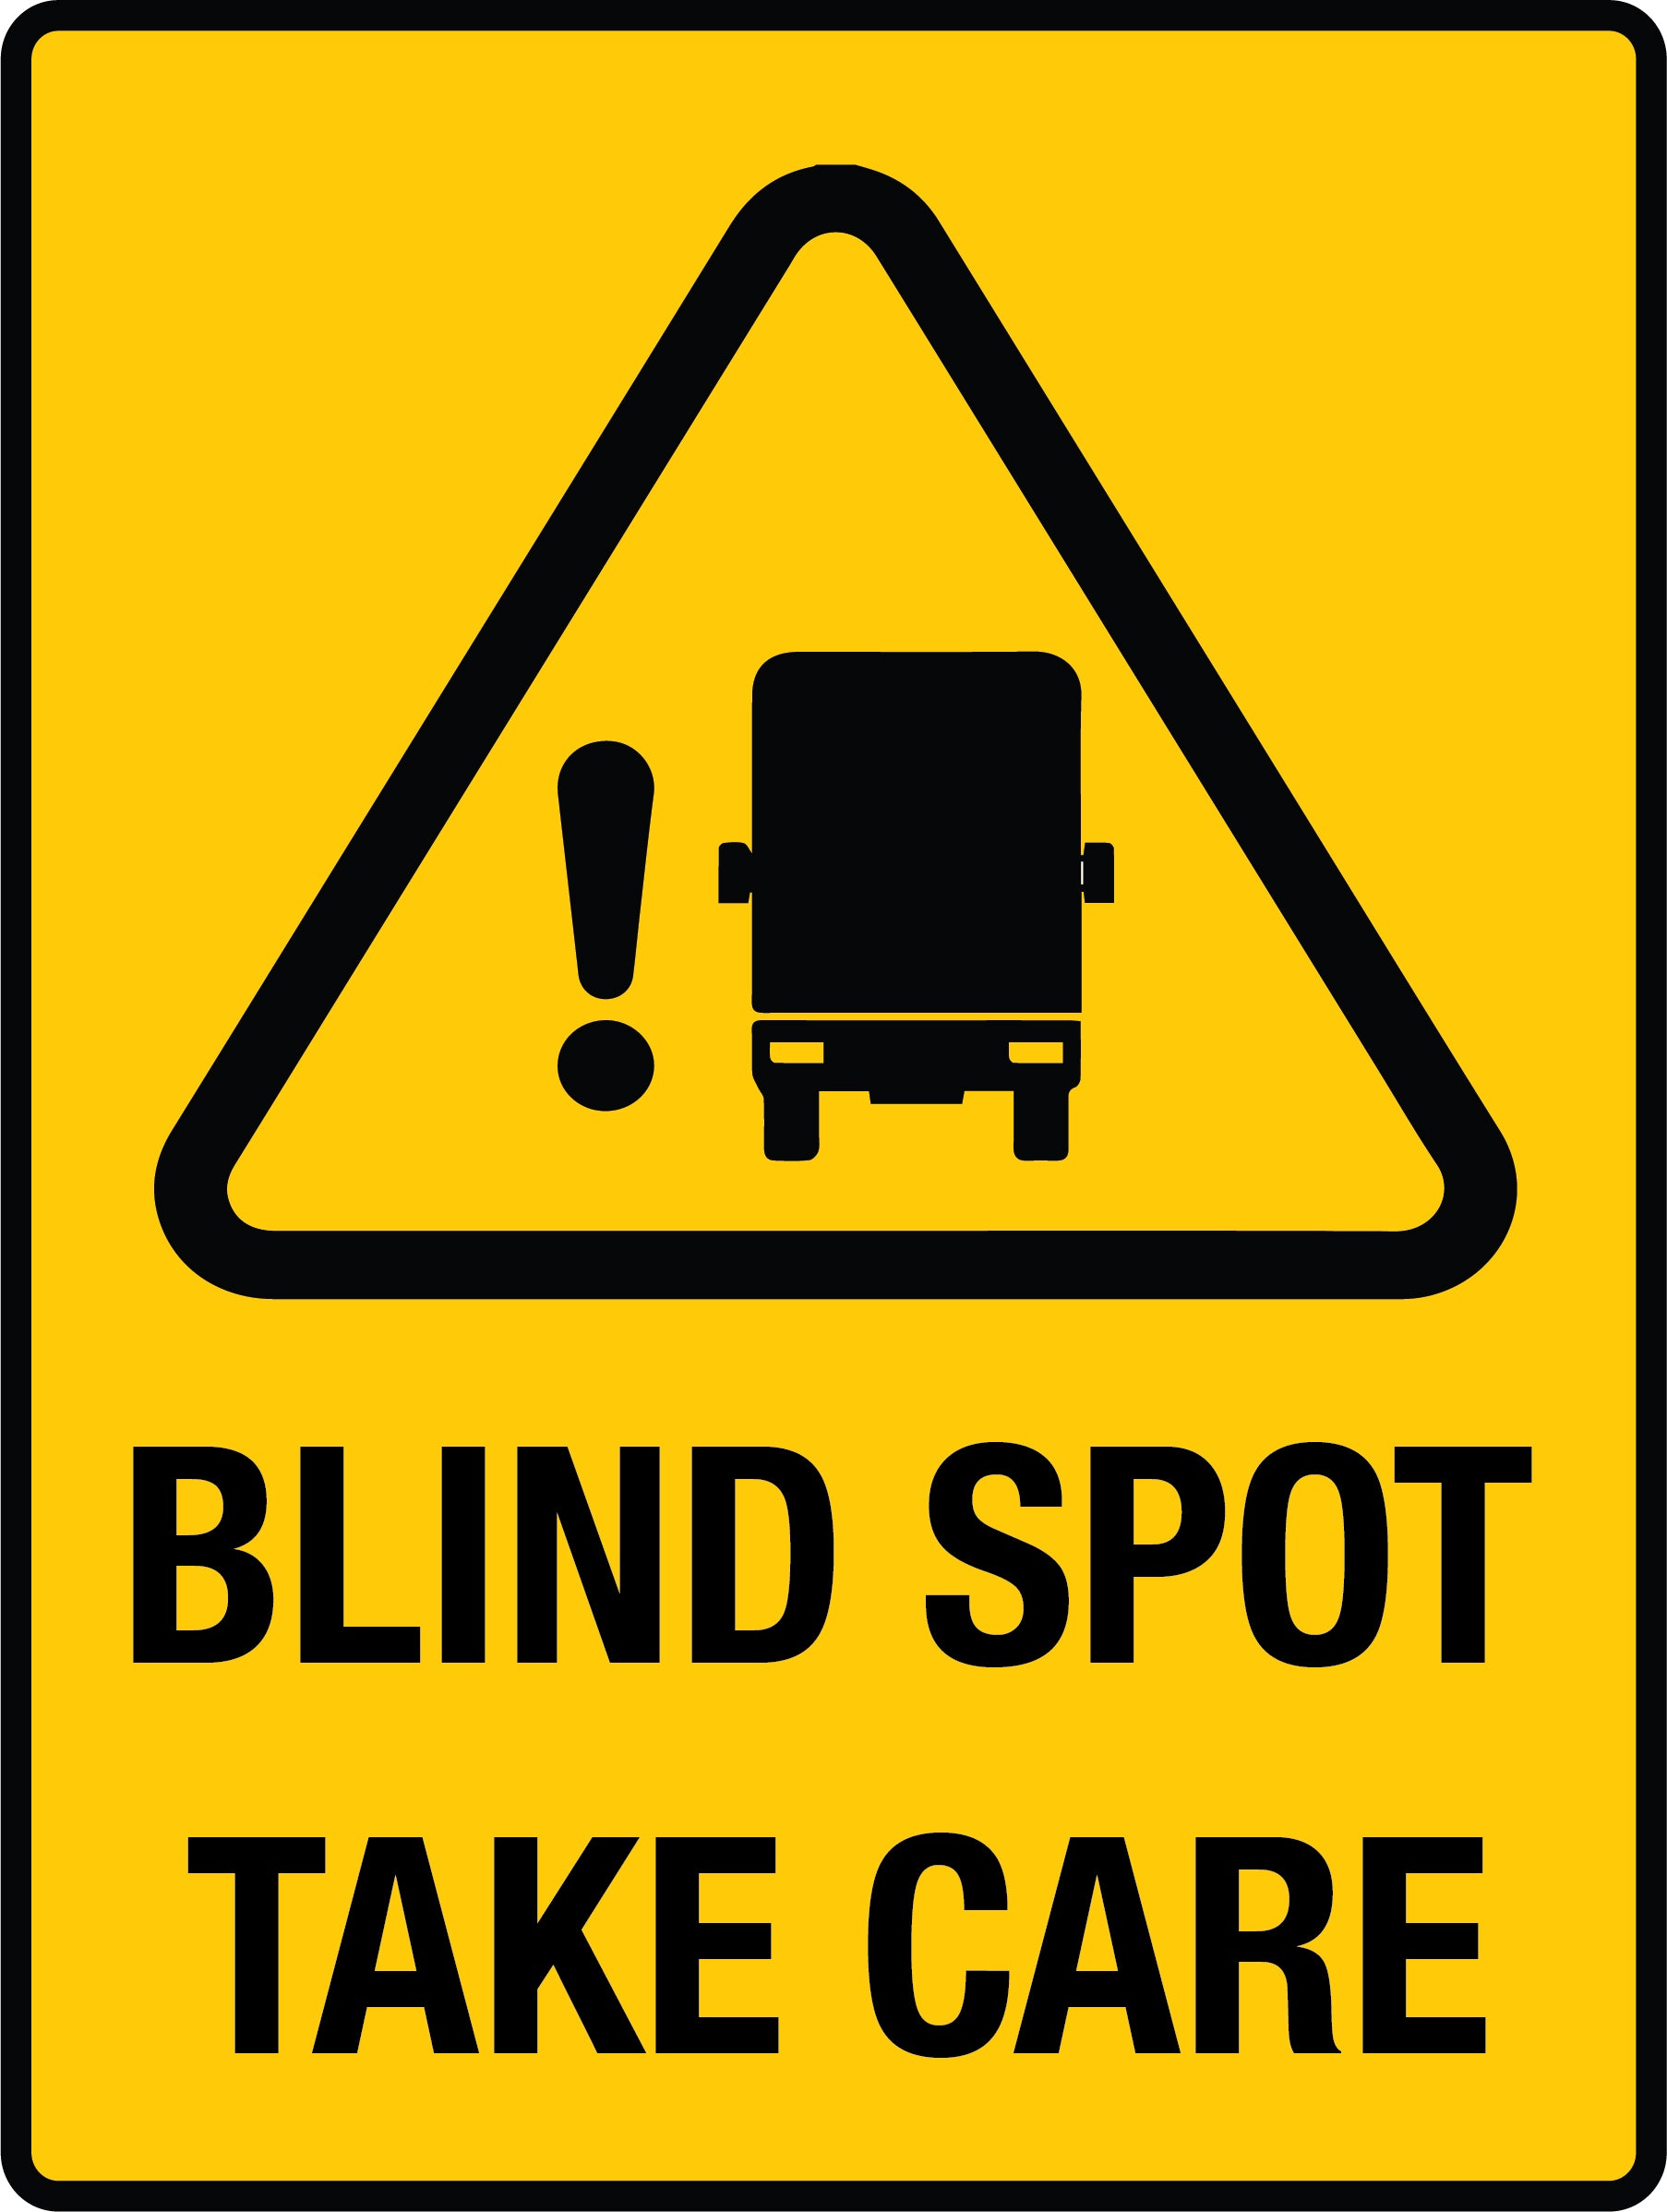 https://www.k2ksigns.com.au/cdn/shop/products/Blind_Spot_Take_Care_Sign_1806x.jpg?v=1696326896